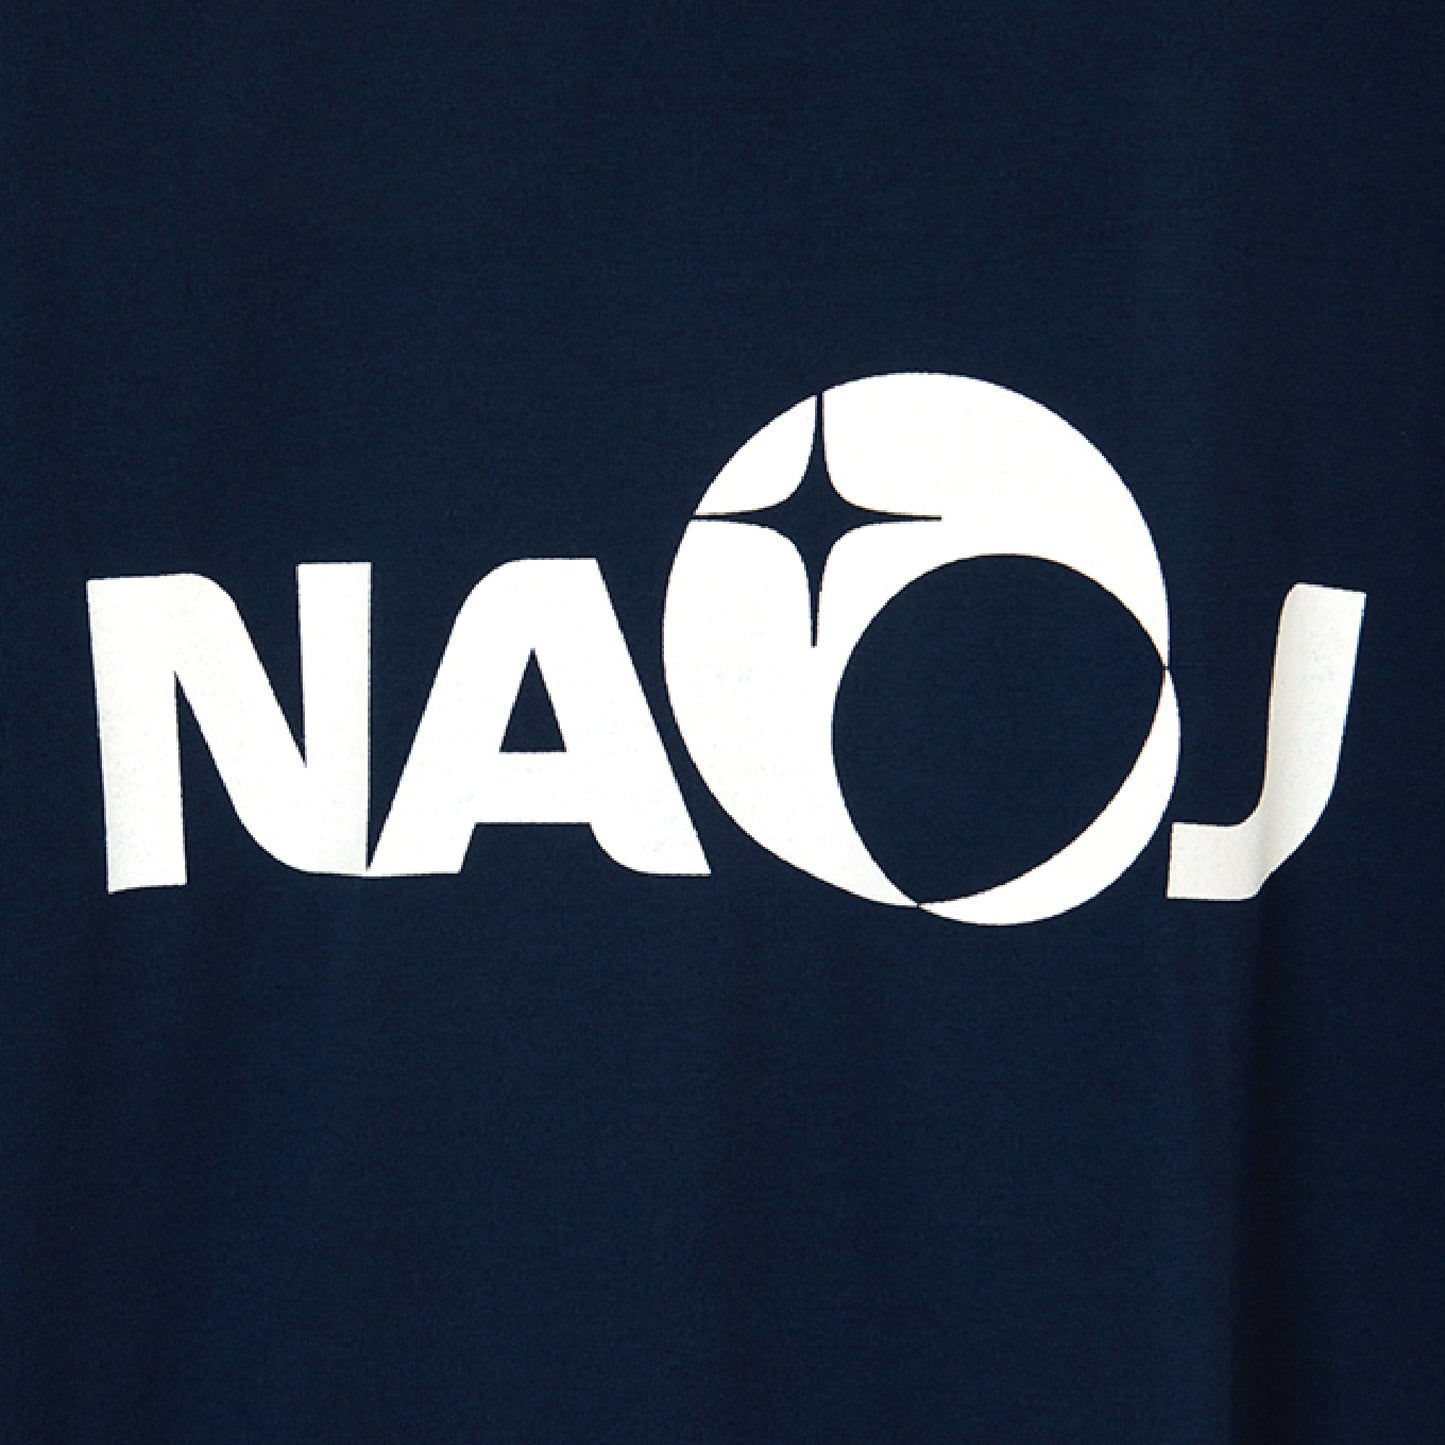 国立天文台 NAOJ ロゴマーク WIC. Tシャツ ネイビー S 02 1333